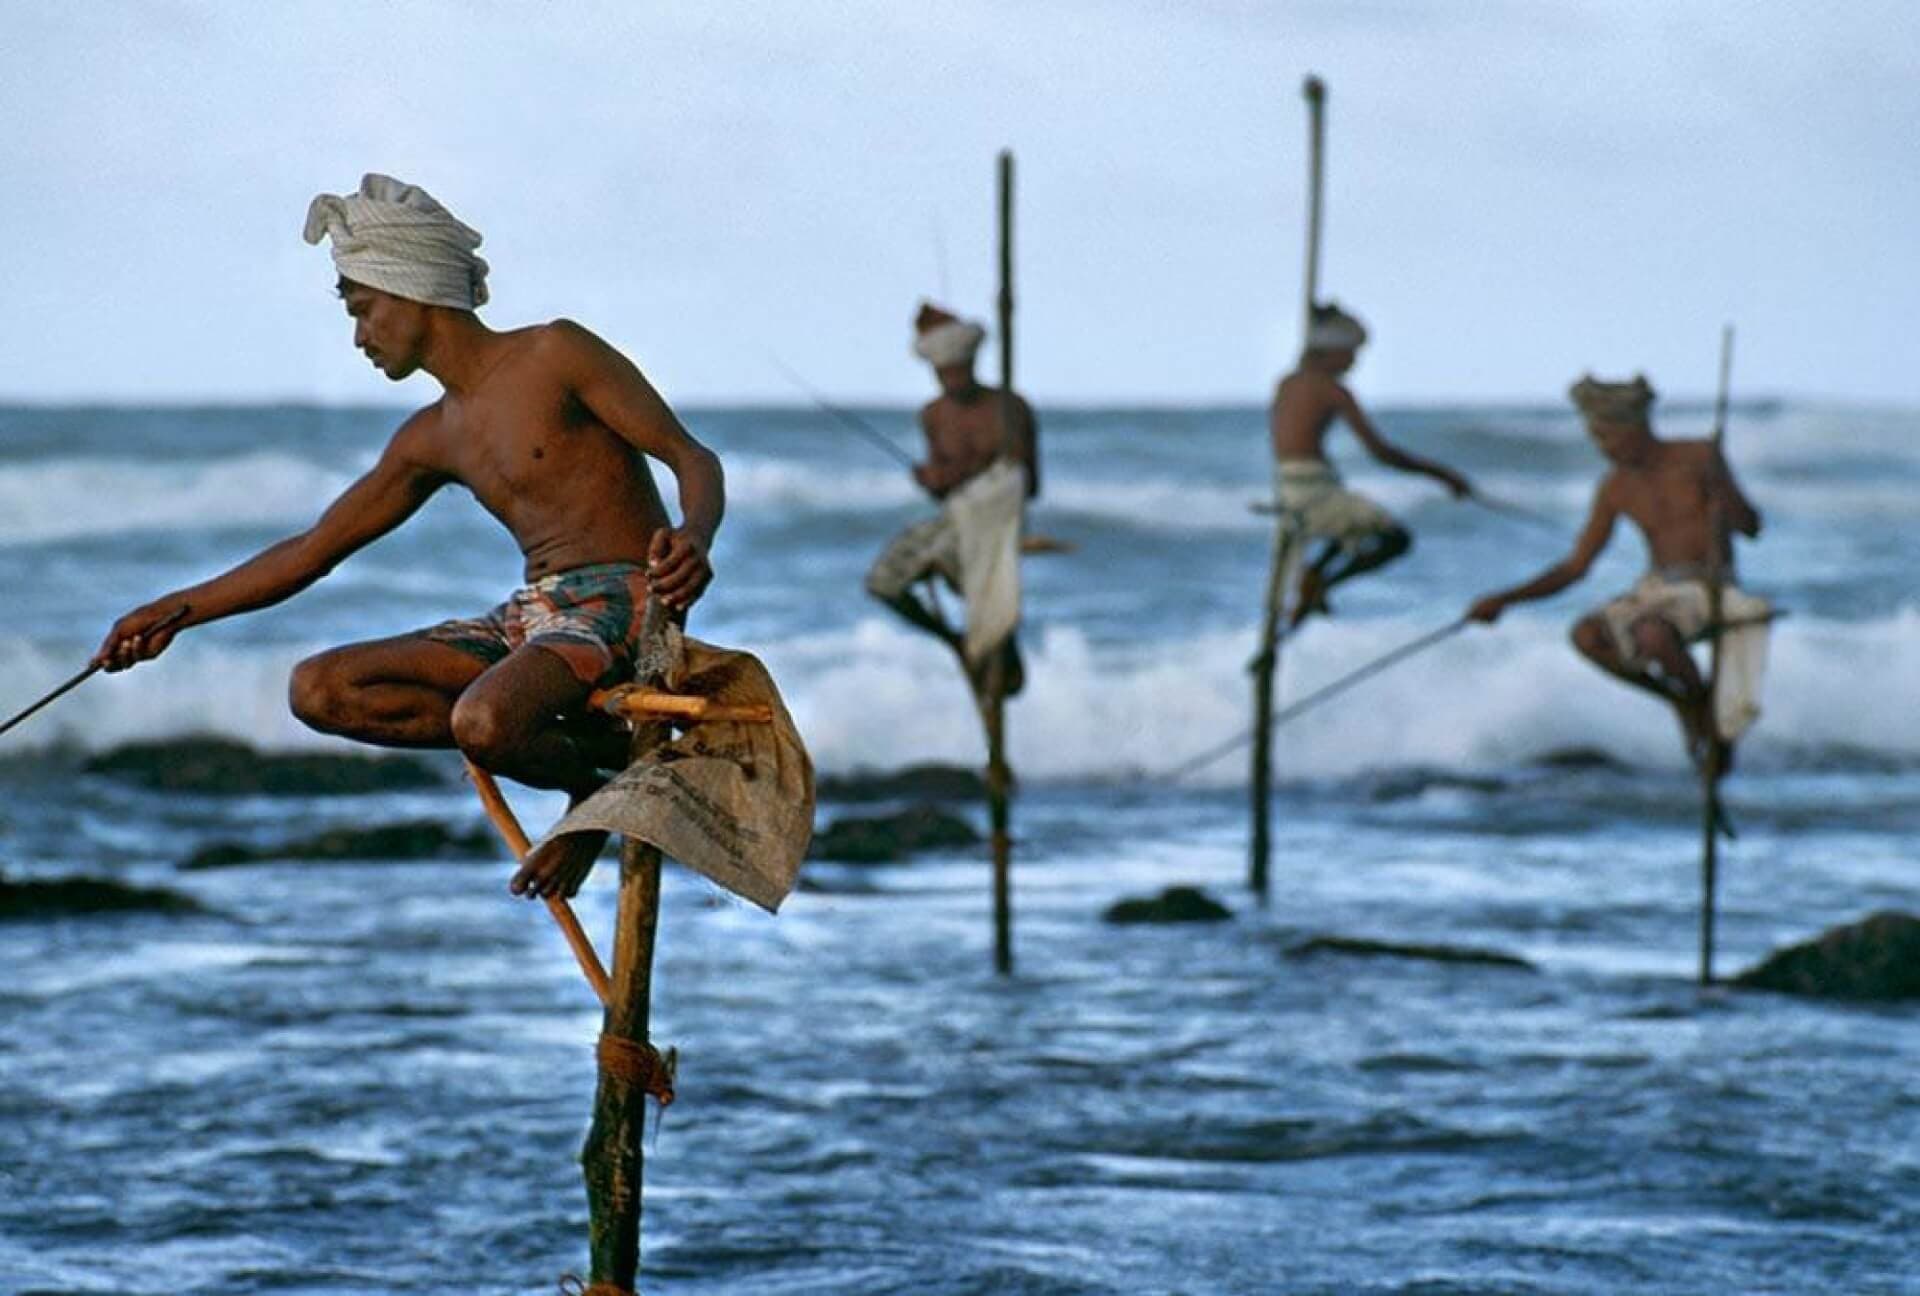 Рыбалка на ходулях и это уникальный метод рыбалки на южном побережье Шри-Ланки.